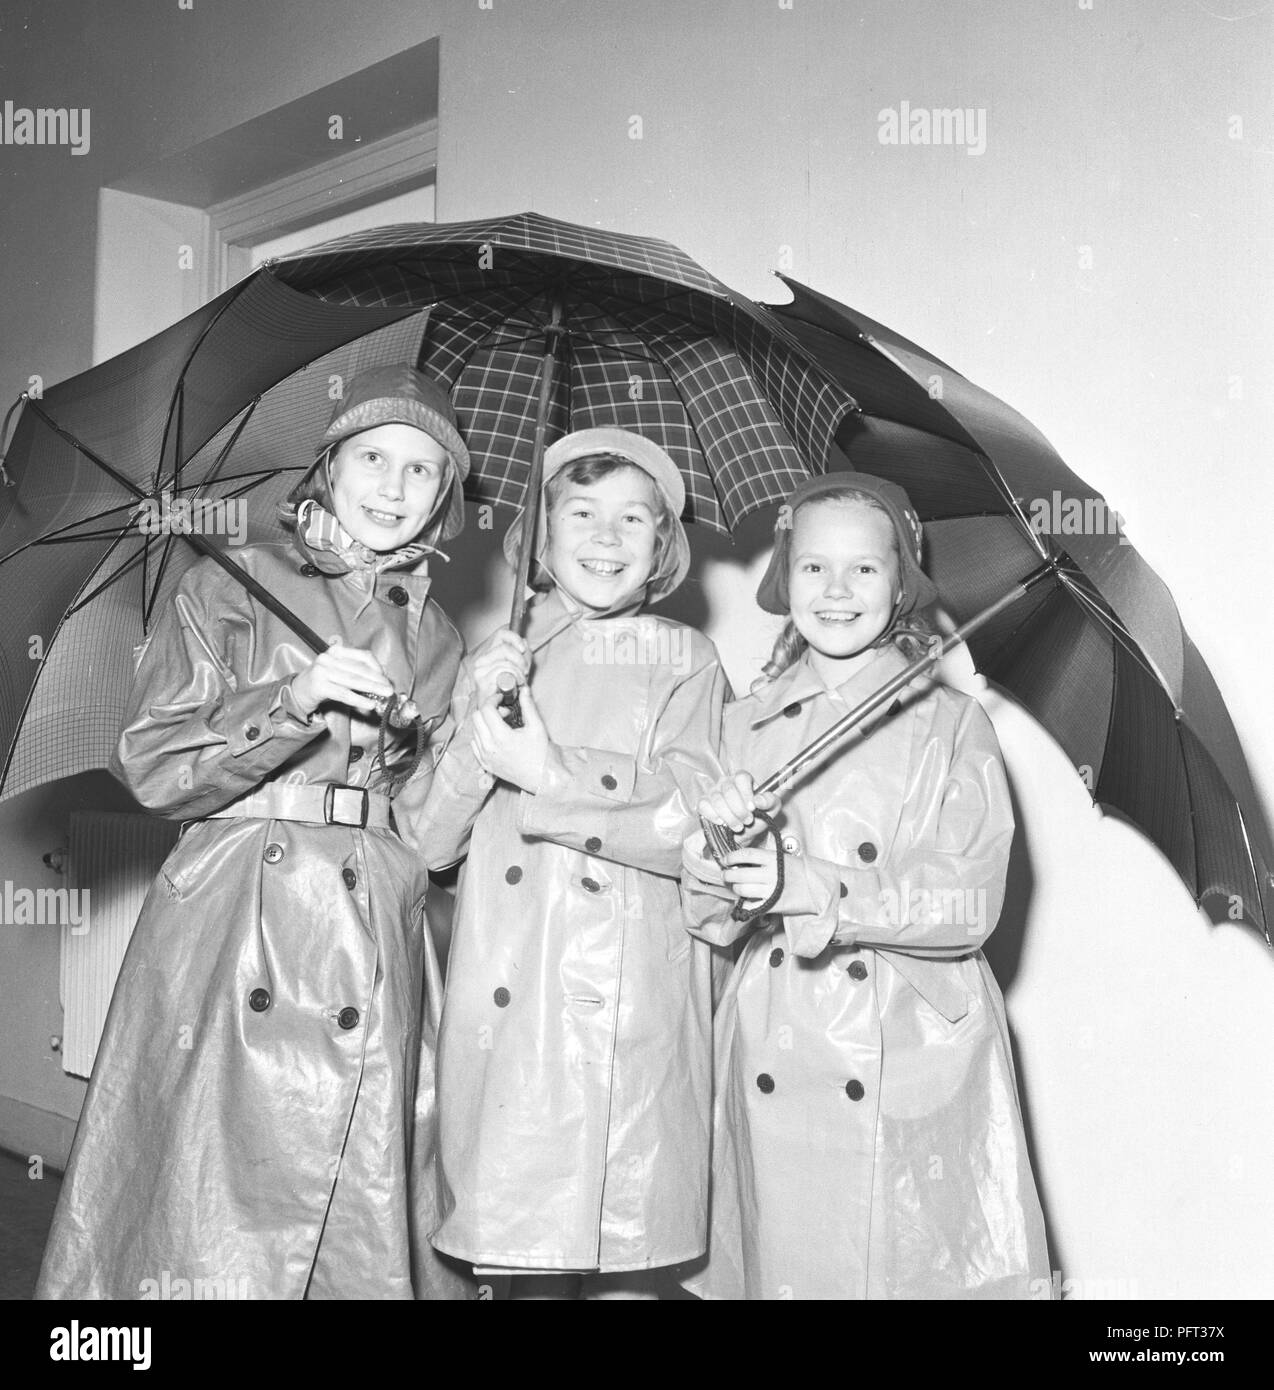 1950er Jahre Kinder in Regenkleidung. Drei Kinder stehen in togetherdressed Regenmäntel und Gummi mit Sonnenschirmen. Schweden November 1952 Stockfoto